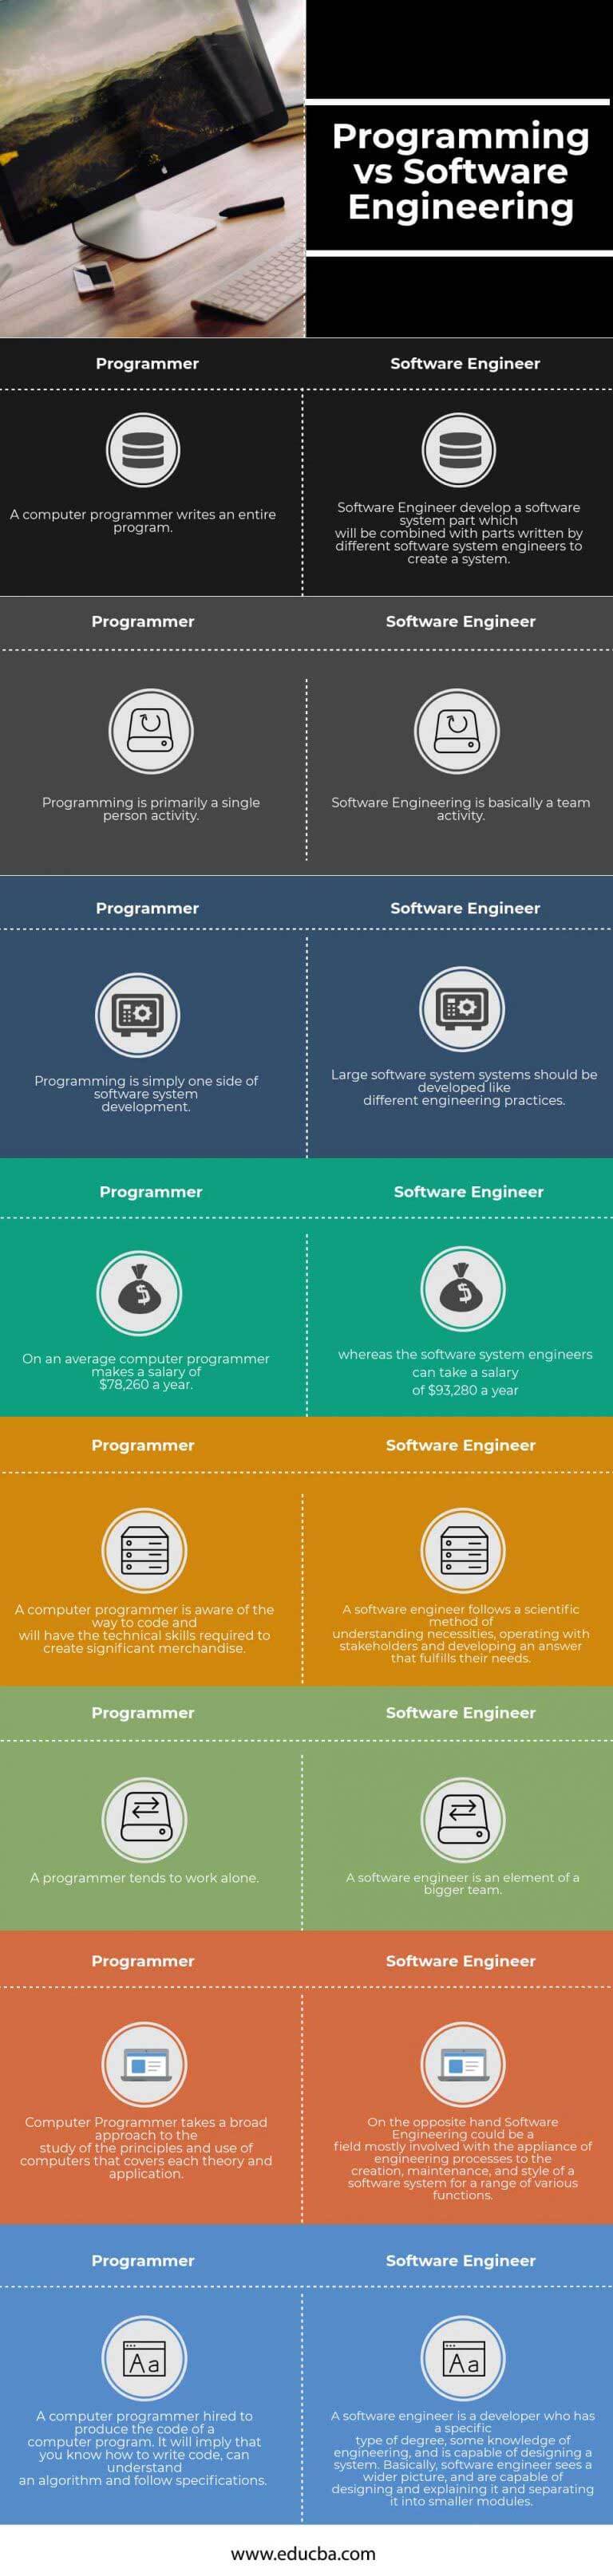 प्रोग्रामिंग बनाम सॉफ्टवेयर इंजीनियरिंग इन्फोग्राफिक्स